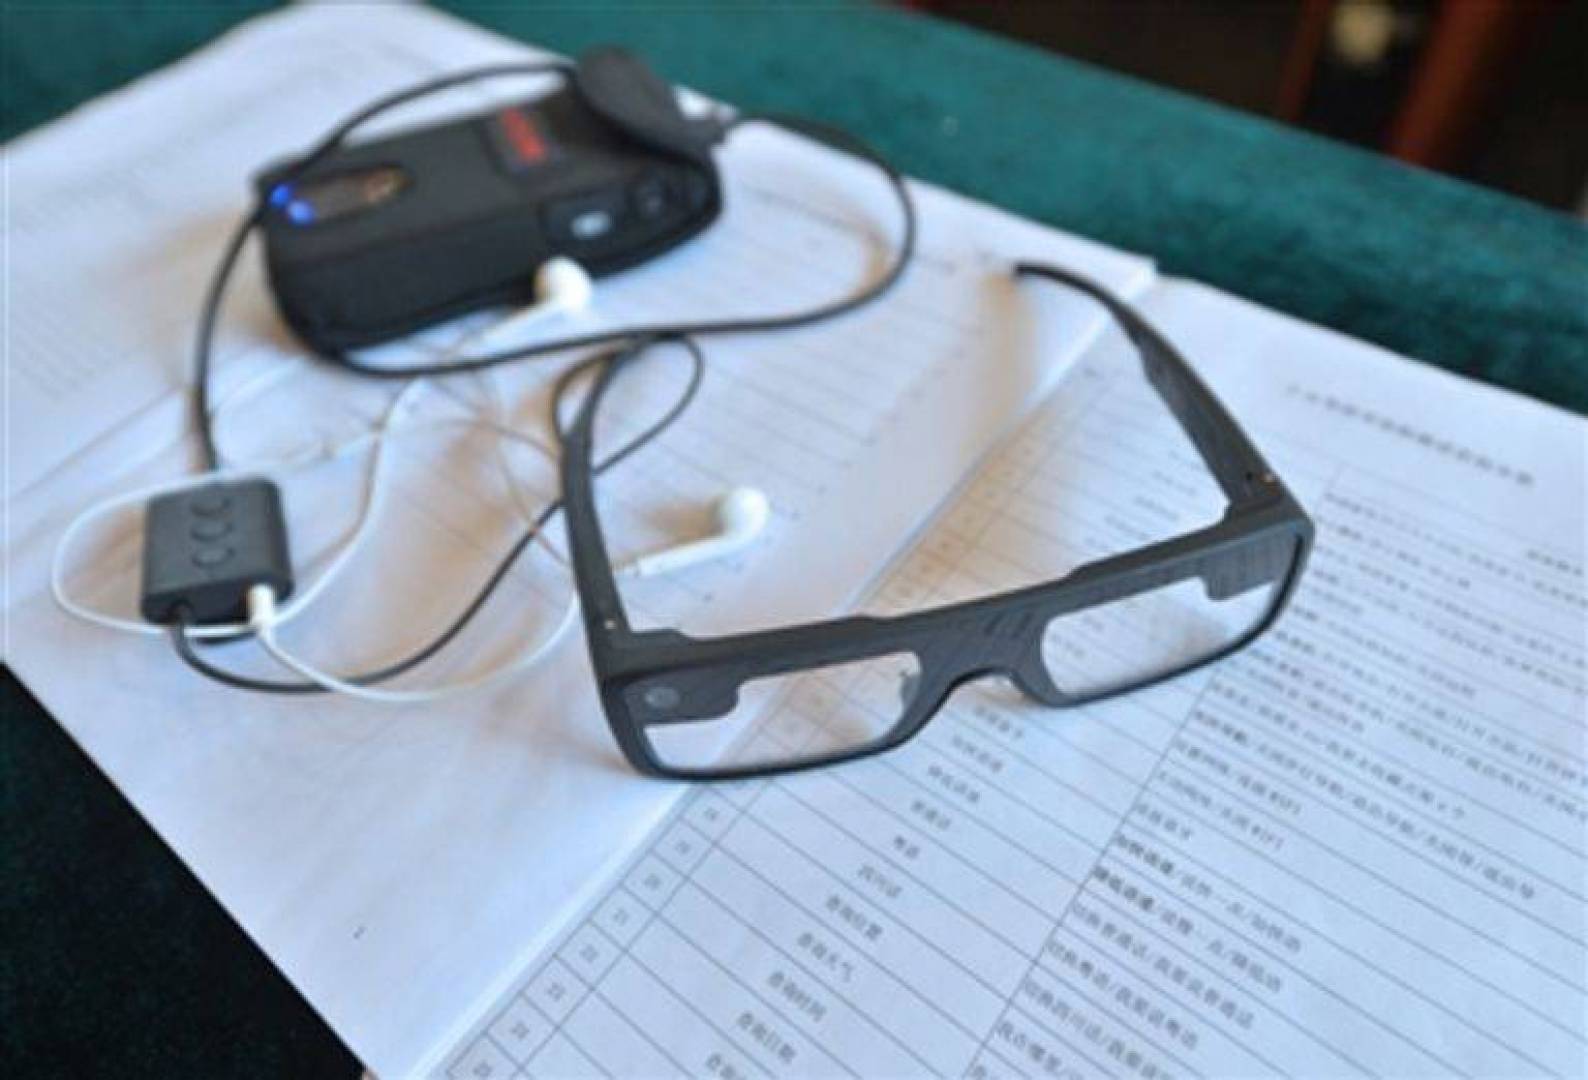 اختراع نظارة ذكية مزودة بسماعة لاسلكية لتسهيل تواصل المكفوفين مع محيطهم